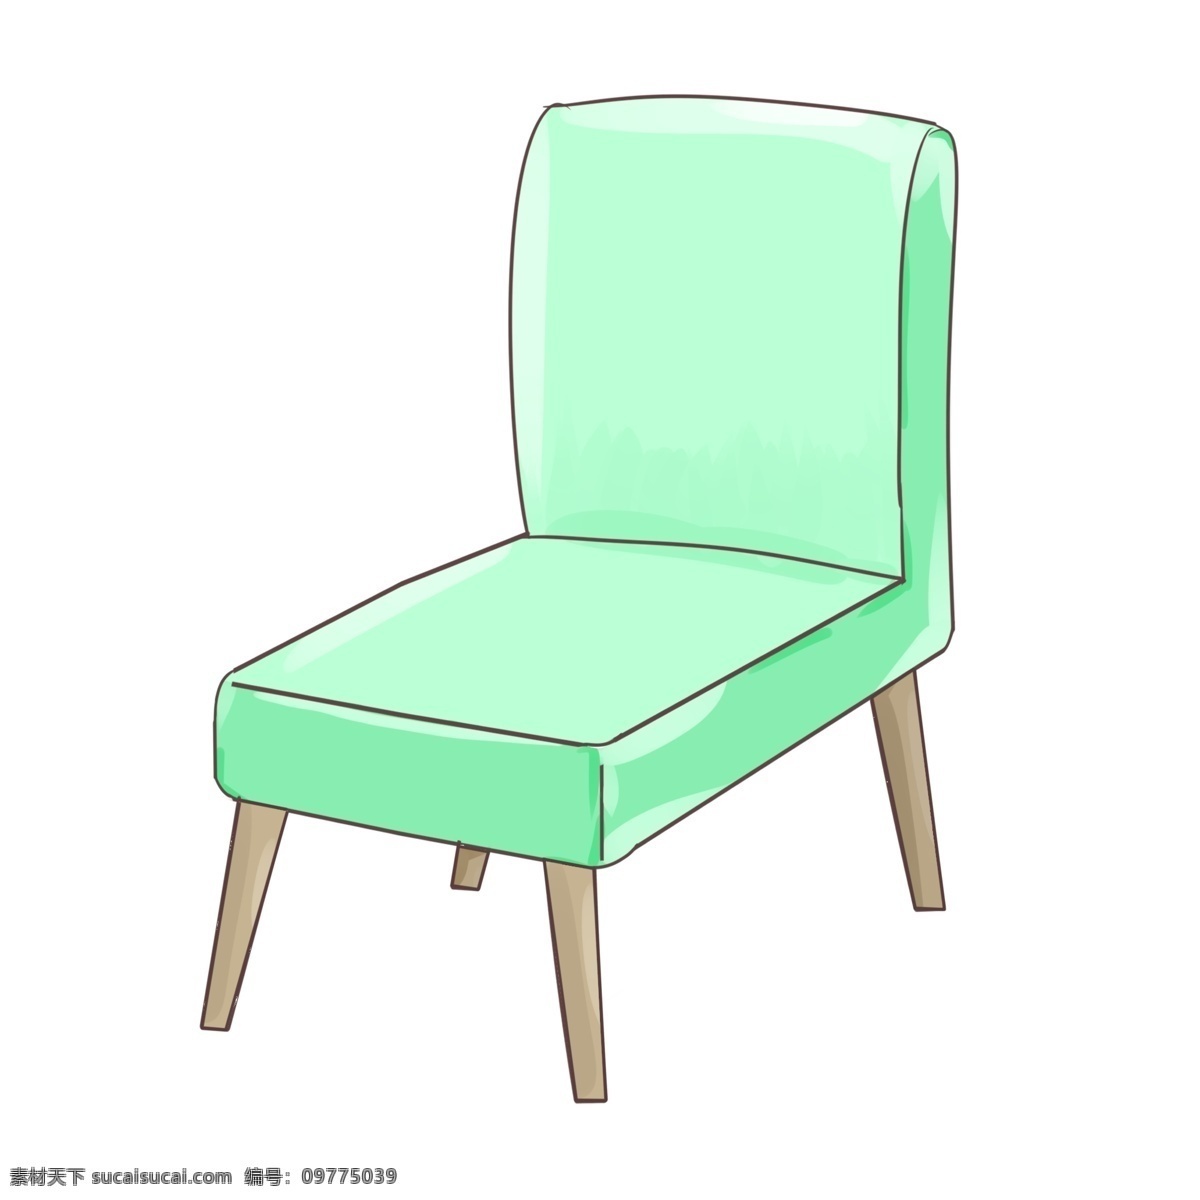 绿色 布艺 餐椅 插画 椅子 绿色布艺餐椅 椅子插画 家具椅子插画 实木混搭 简约椅子插画